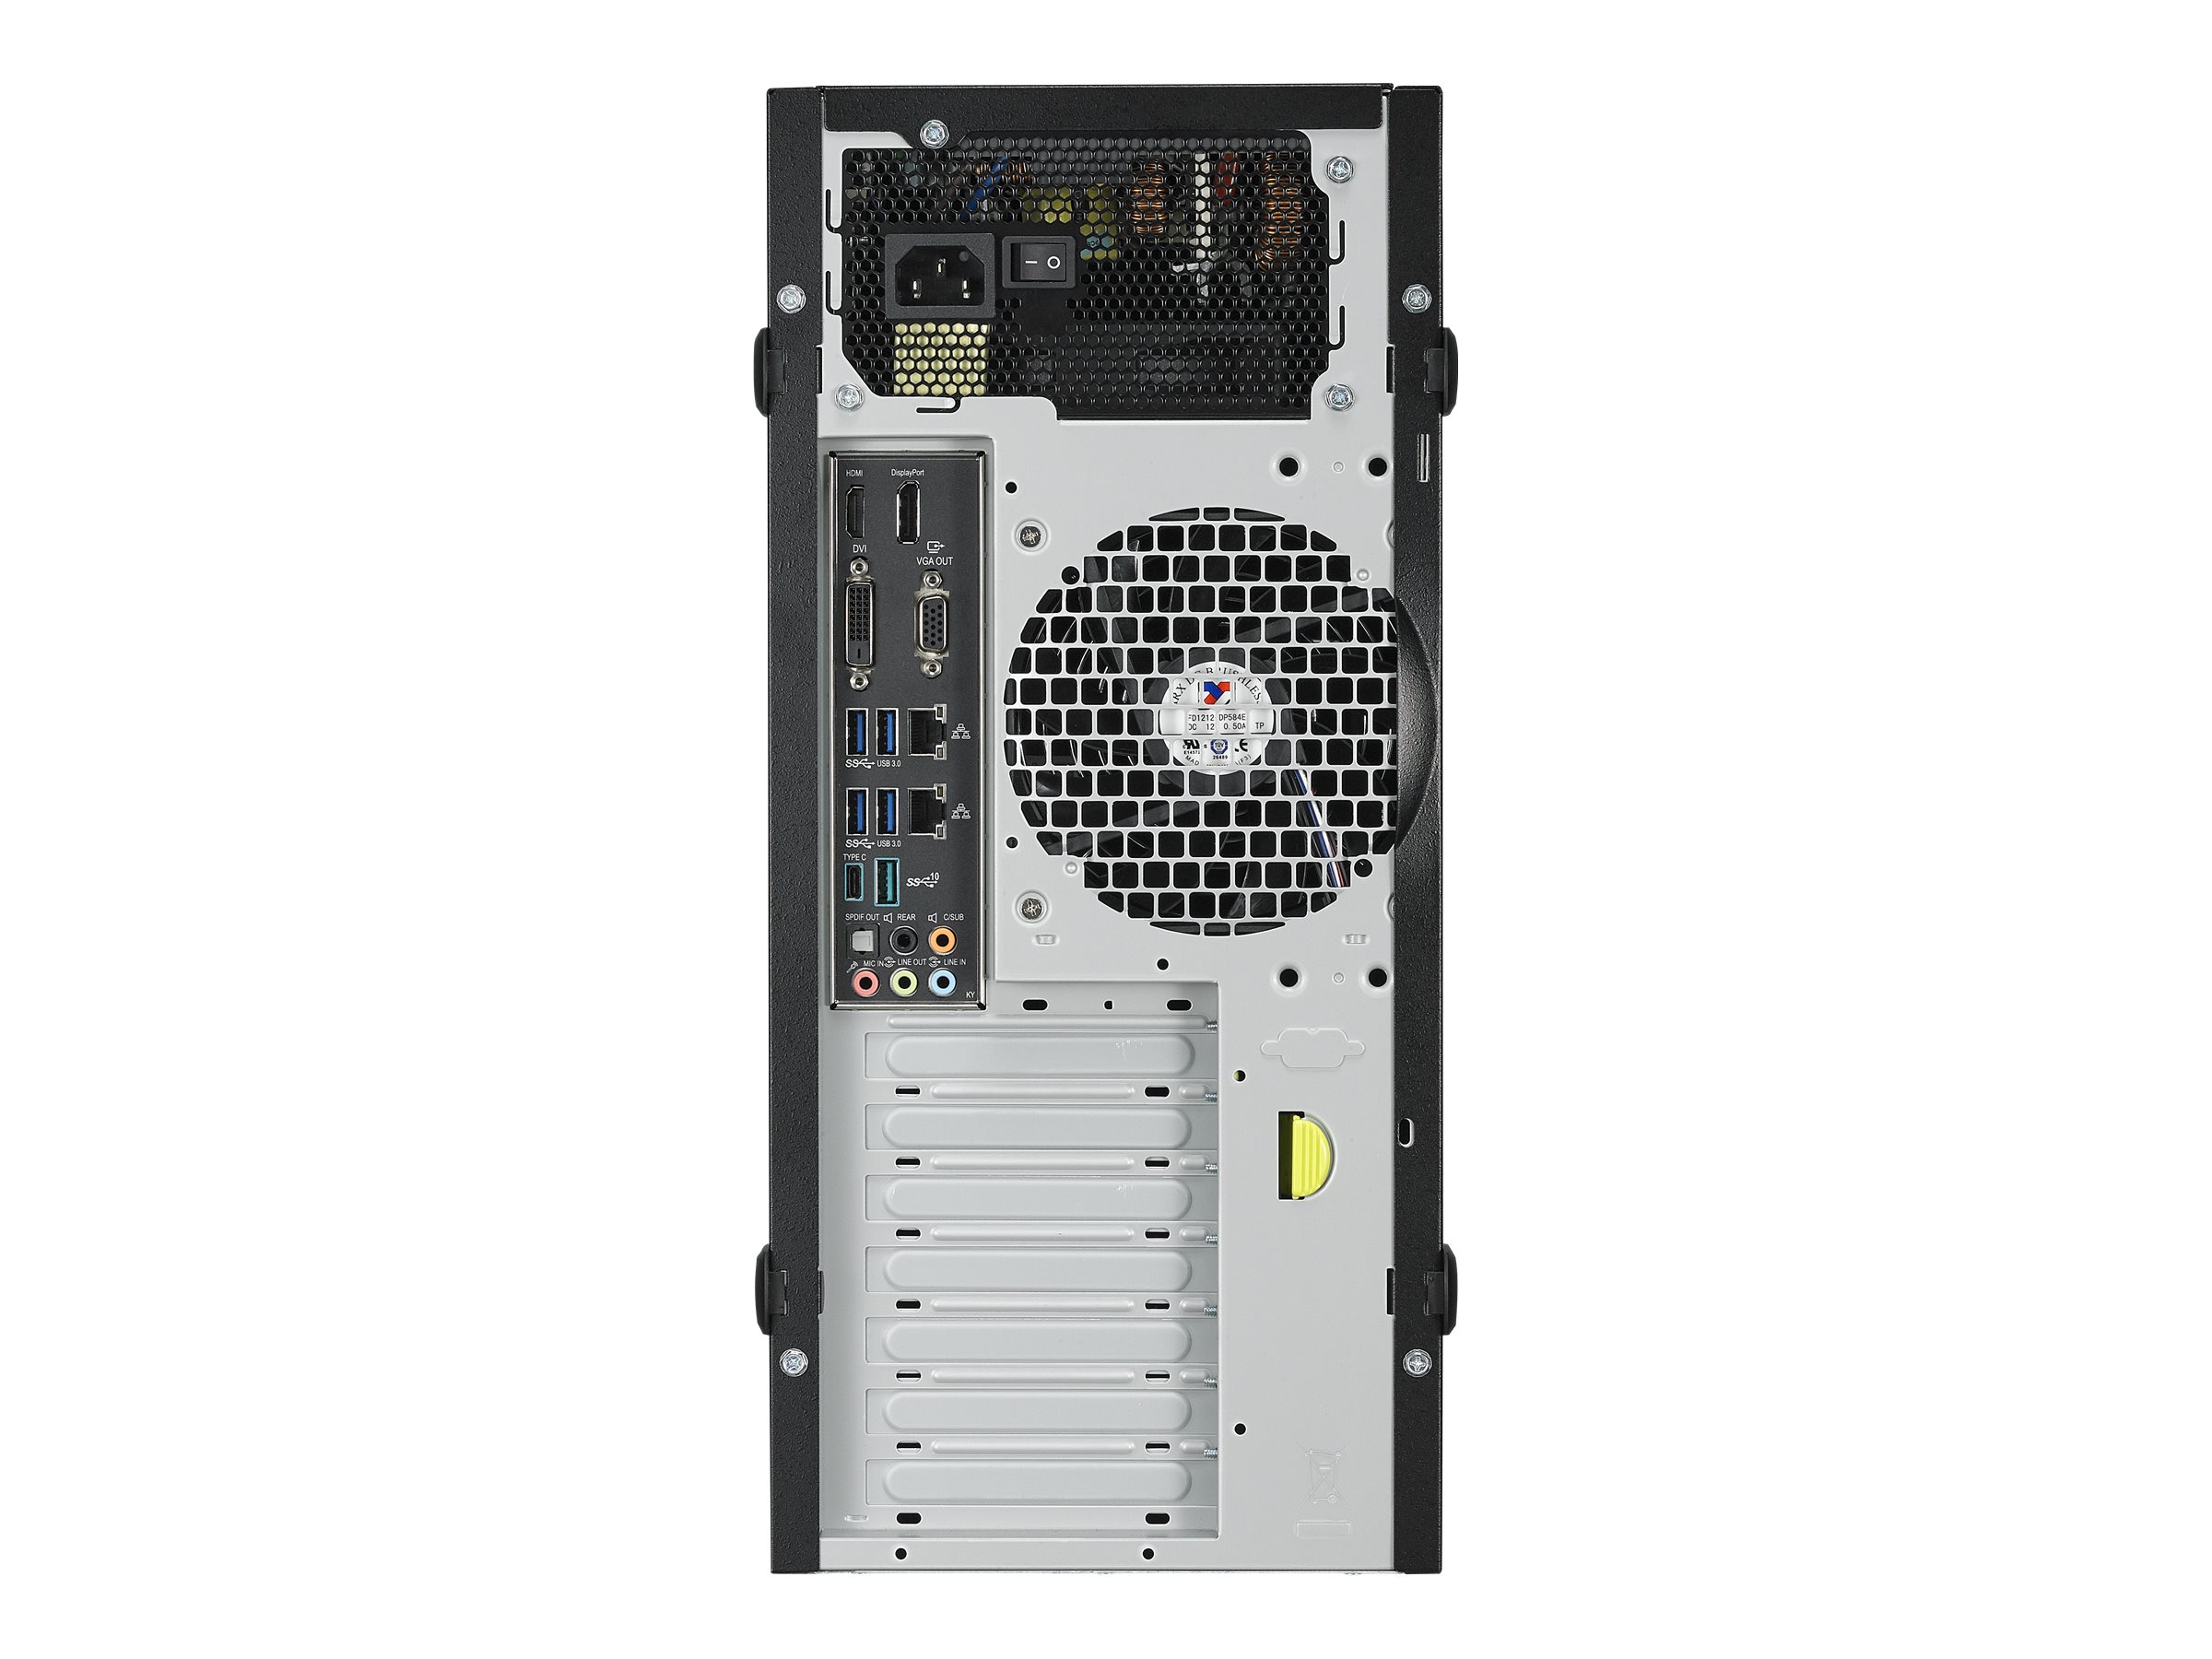 ASUS E500 G5 - Tour - 1 x Xeon E-2246G / jusqu'à 4.8 GHz - RAM 128 Go - SSD 512 Go - DVD - Quadro P2200 - Gigabit Ethernet - Win 10 Pro - moniteur : aucun - 90SF00Q1-M11350 - Ordinateurs de bureau